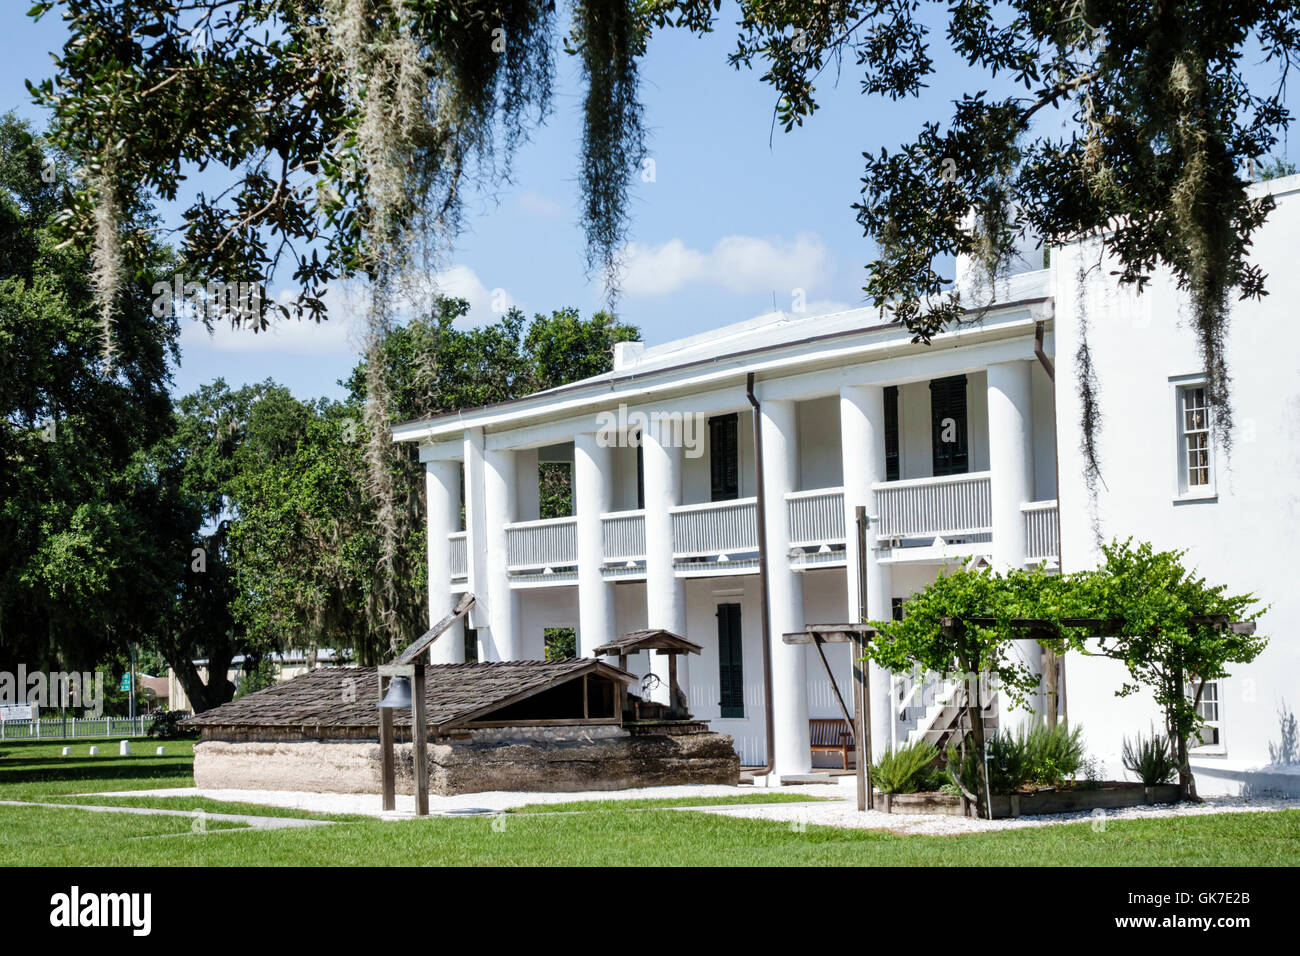 Florida Ellenton, Gamble Plantation Historic state Park, palazzo anteguerra, registro nazionale dei luoghi storici, rivivalista dorico vista ide, colonna, Spanis Foto Stock